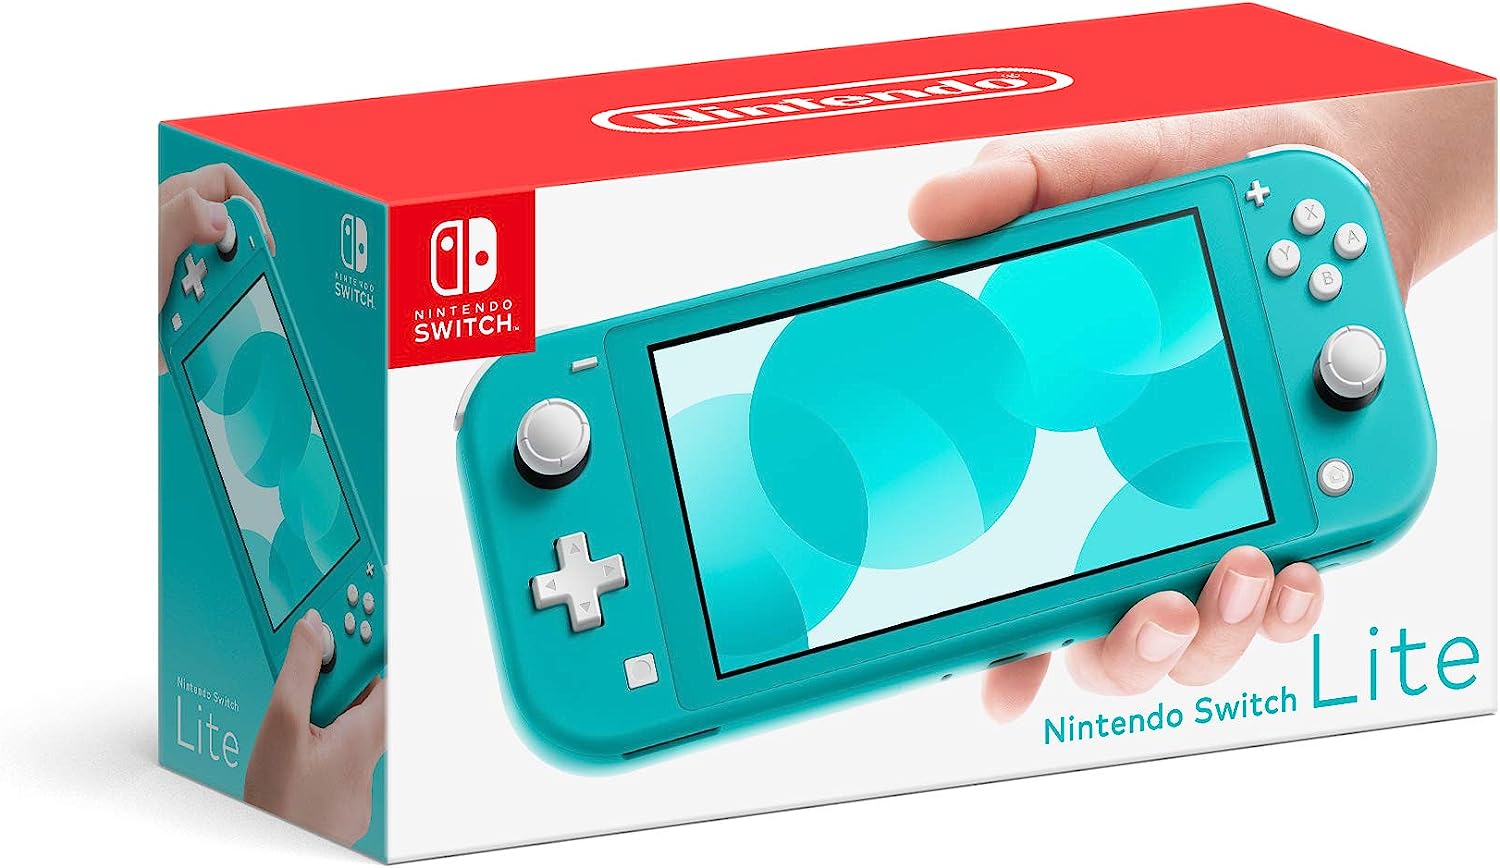 Nintendo Switch Lite - Edición Estándar - Azul Turquesa. Version Internacional -